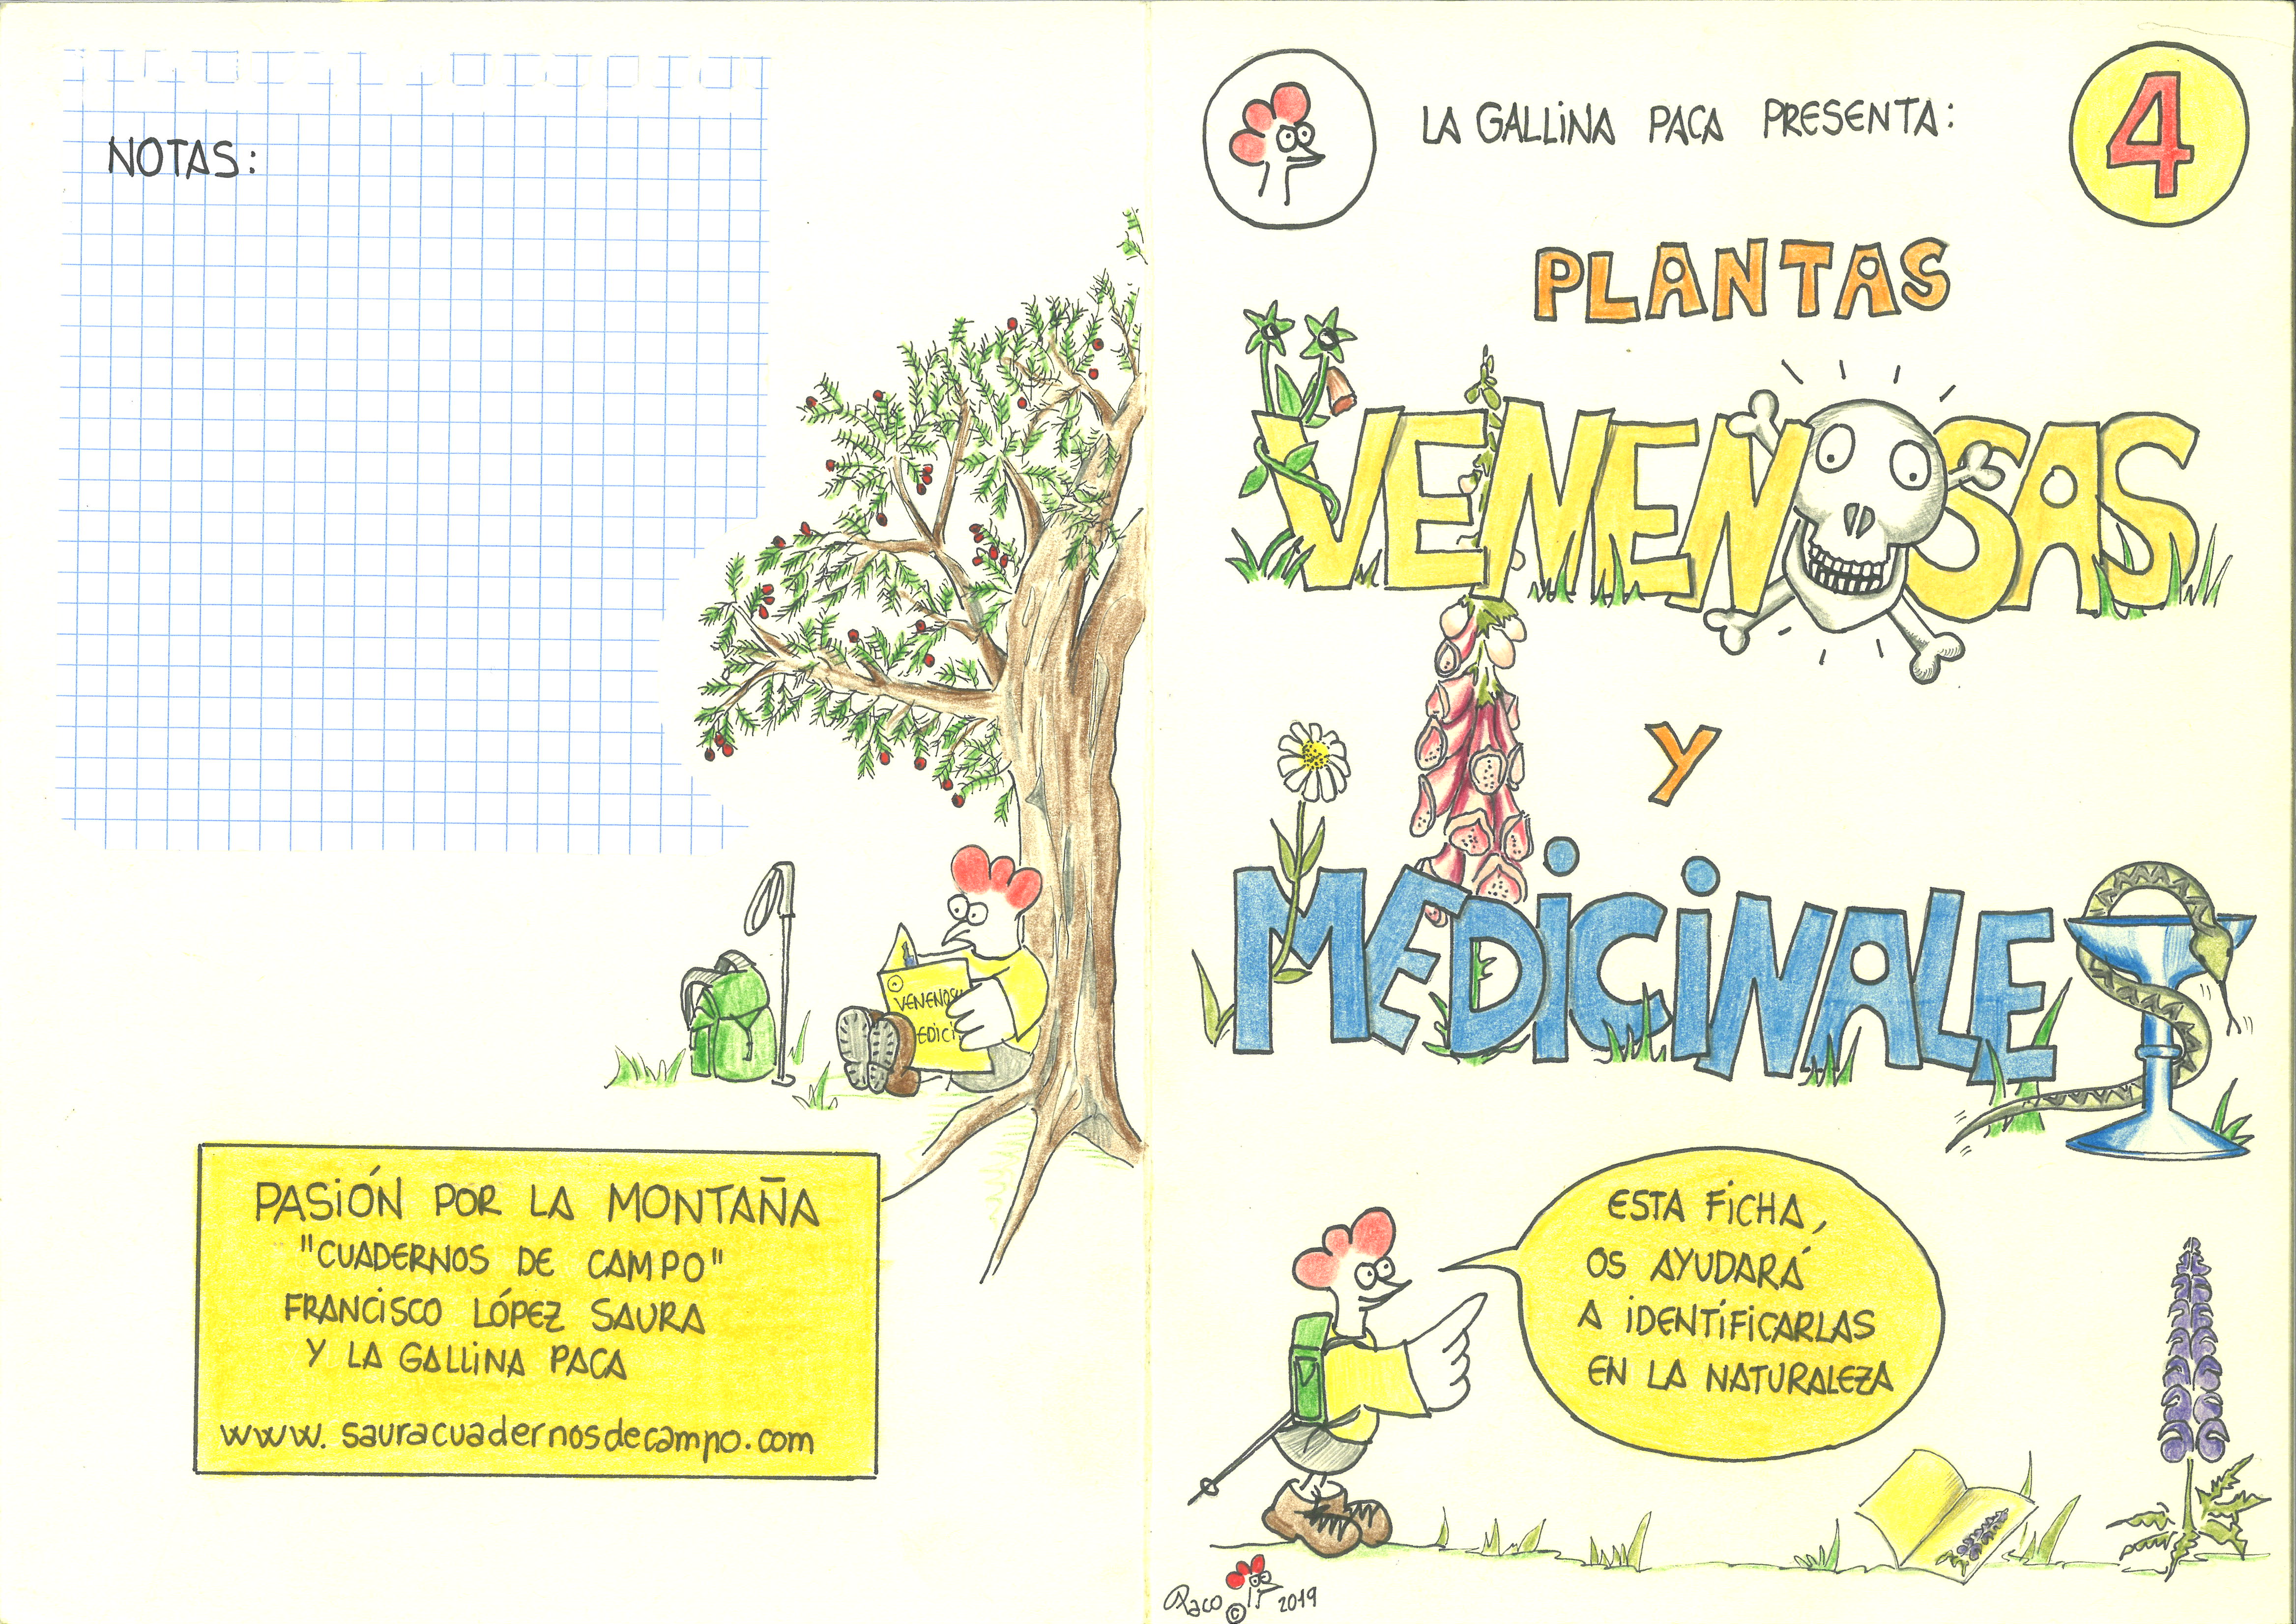 4-Plantas Venenosas y medicinales.(exterior)